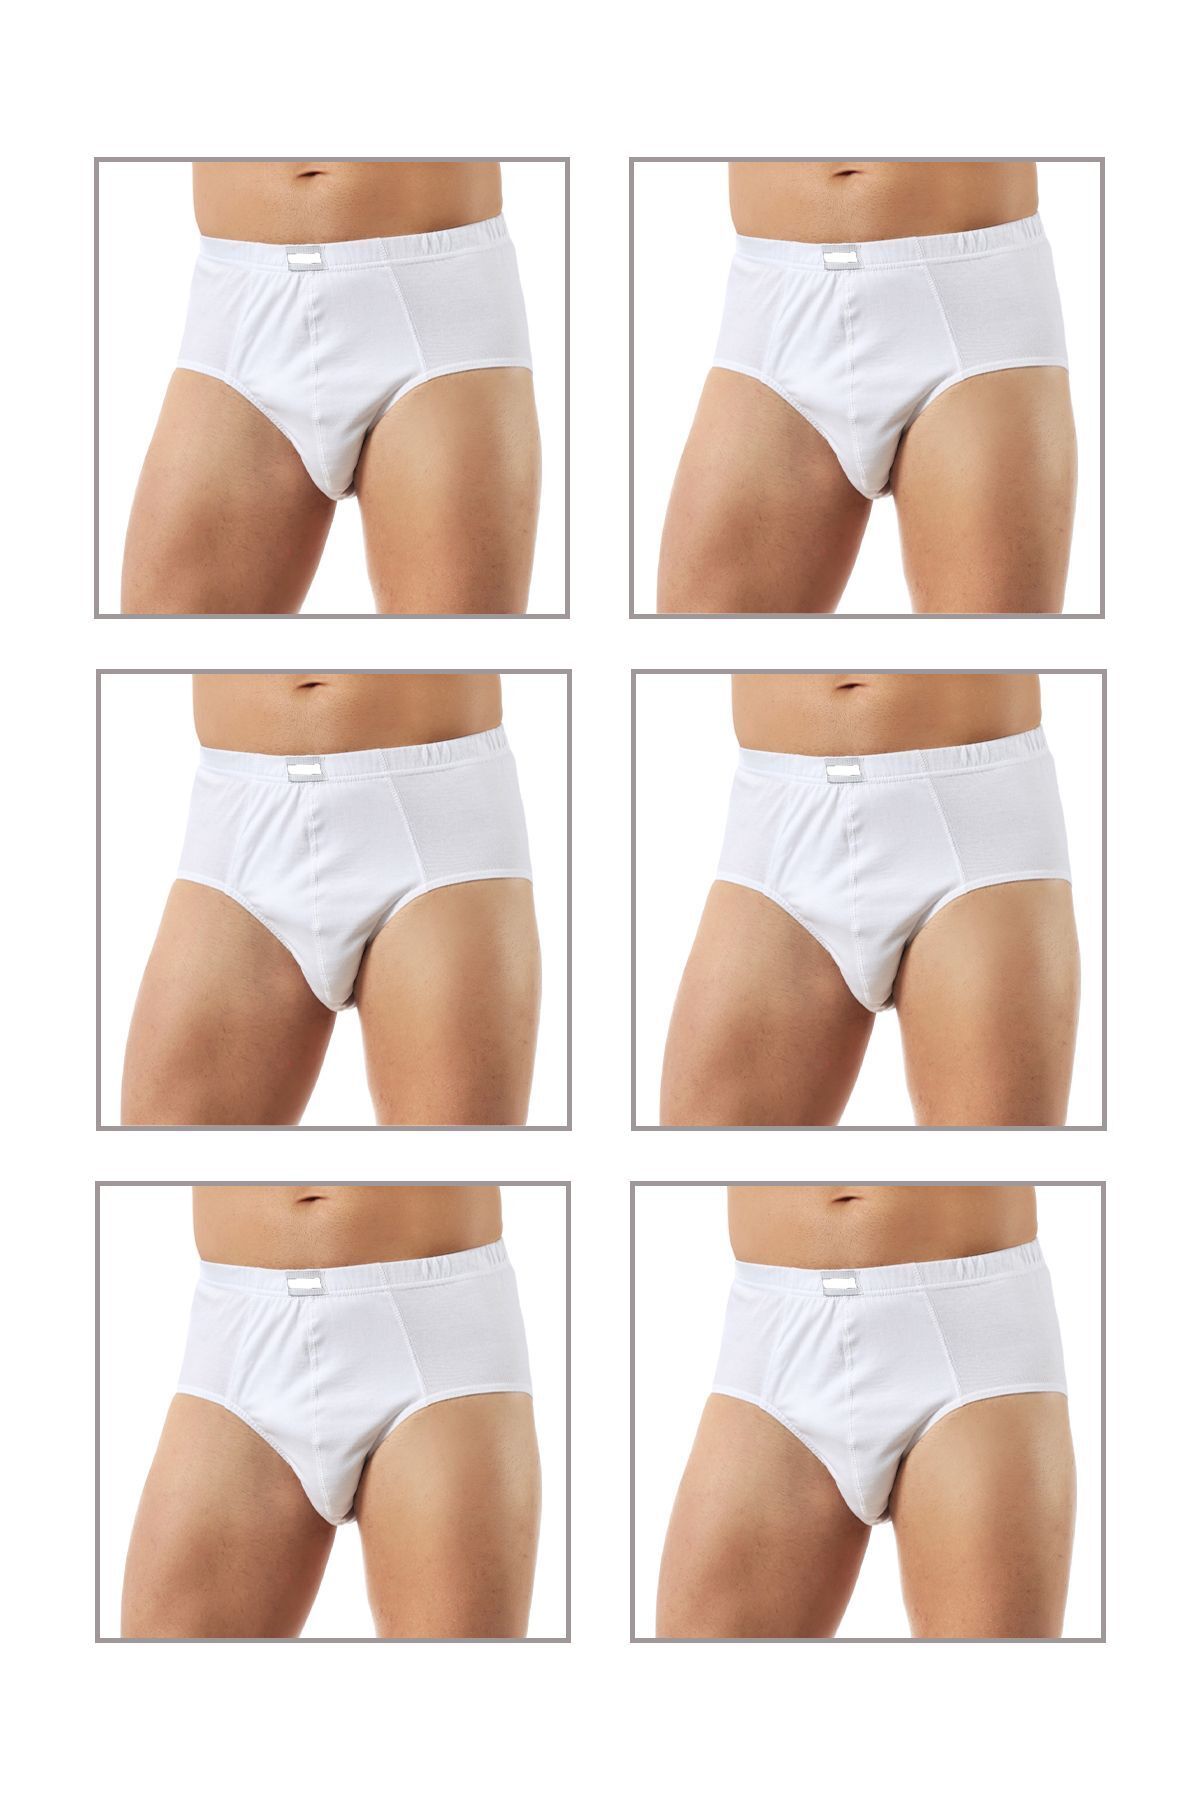 ÖZKAN underwear Özkan 0037 6'lı Paket Erkek Pamuklu Penye Süprem Esnek Rahat Slip Külot